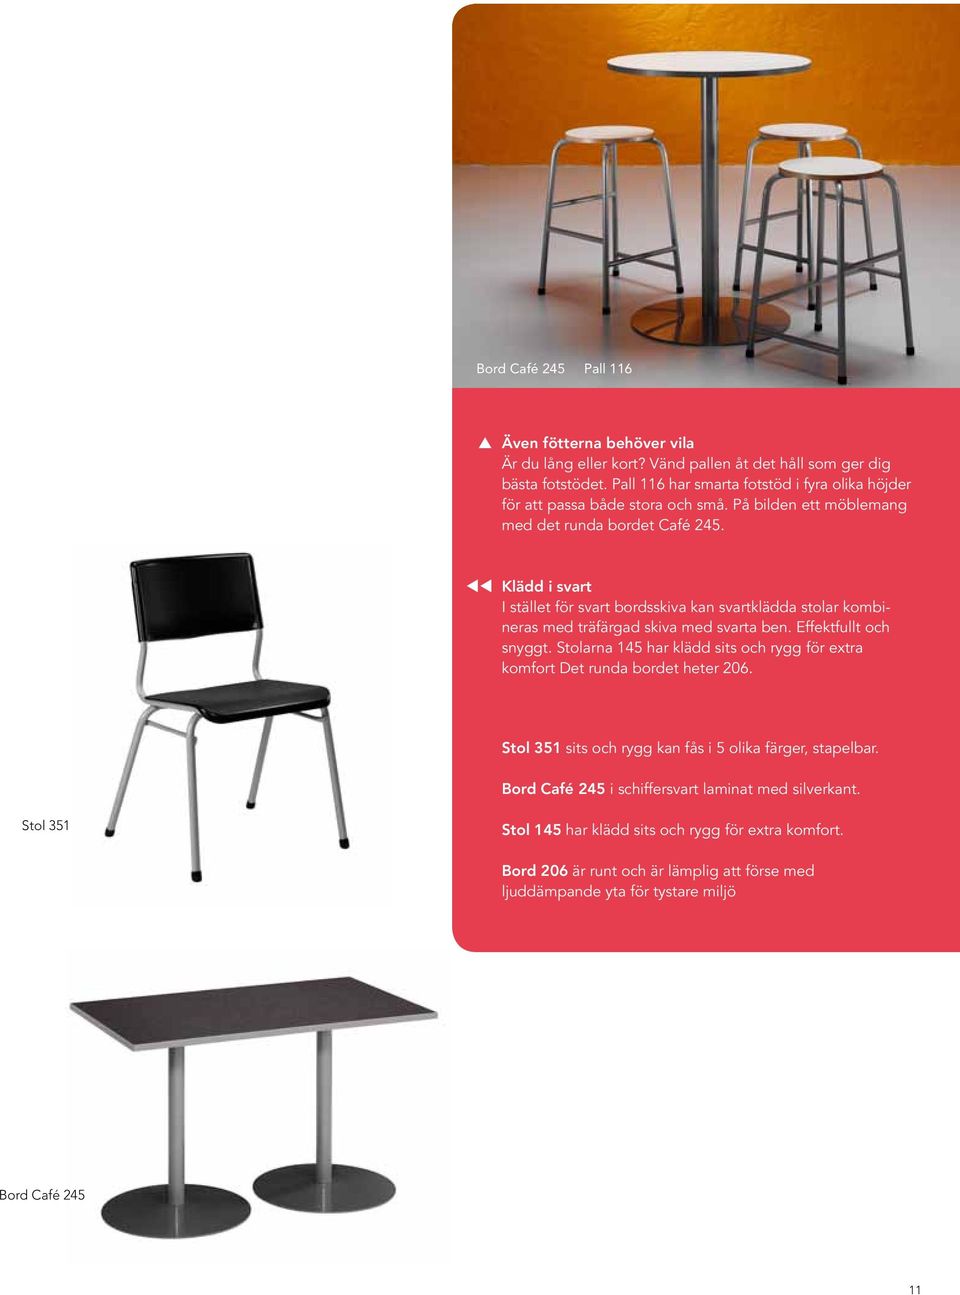 Klädd i svart I stället för svart bordsskiva kan svartklädda stolar kombineras med träfärgad skiva med svarta ben. Effektfullt och snyggt.